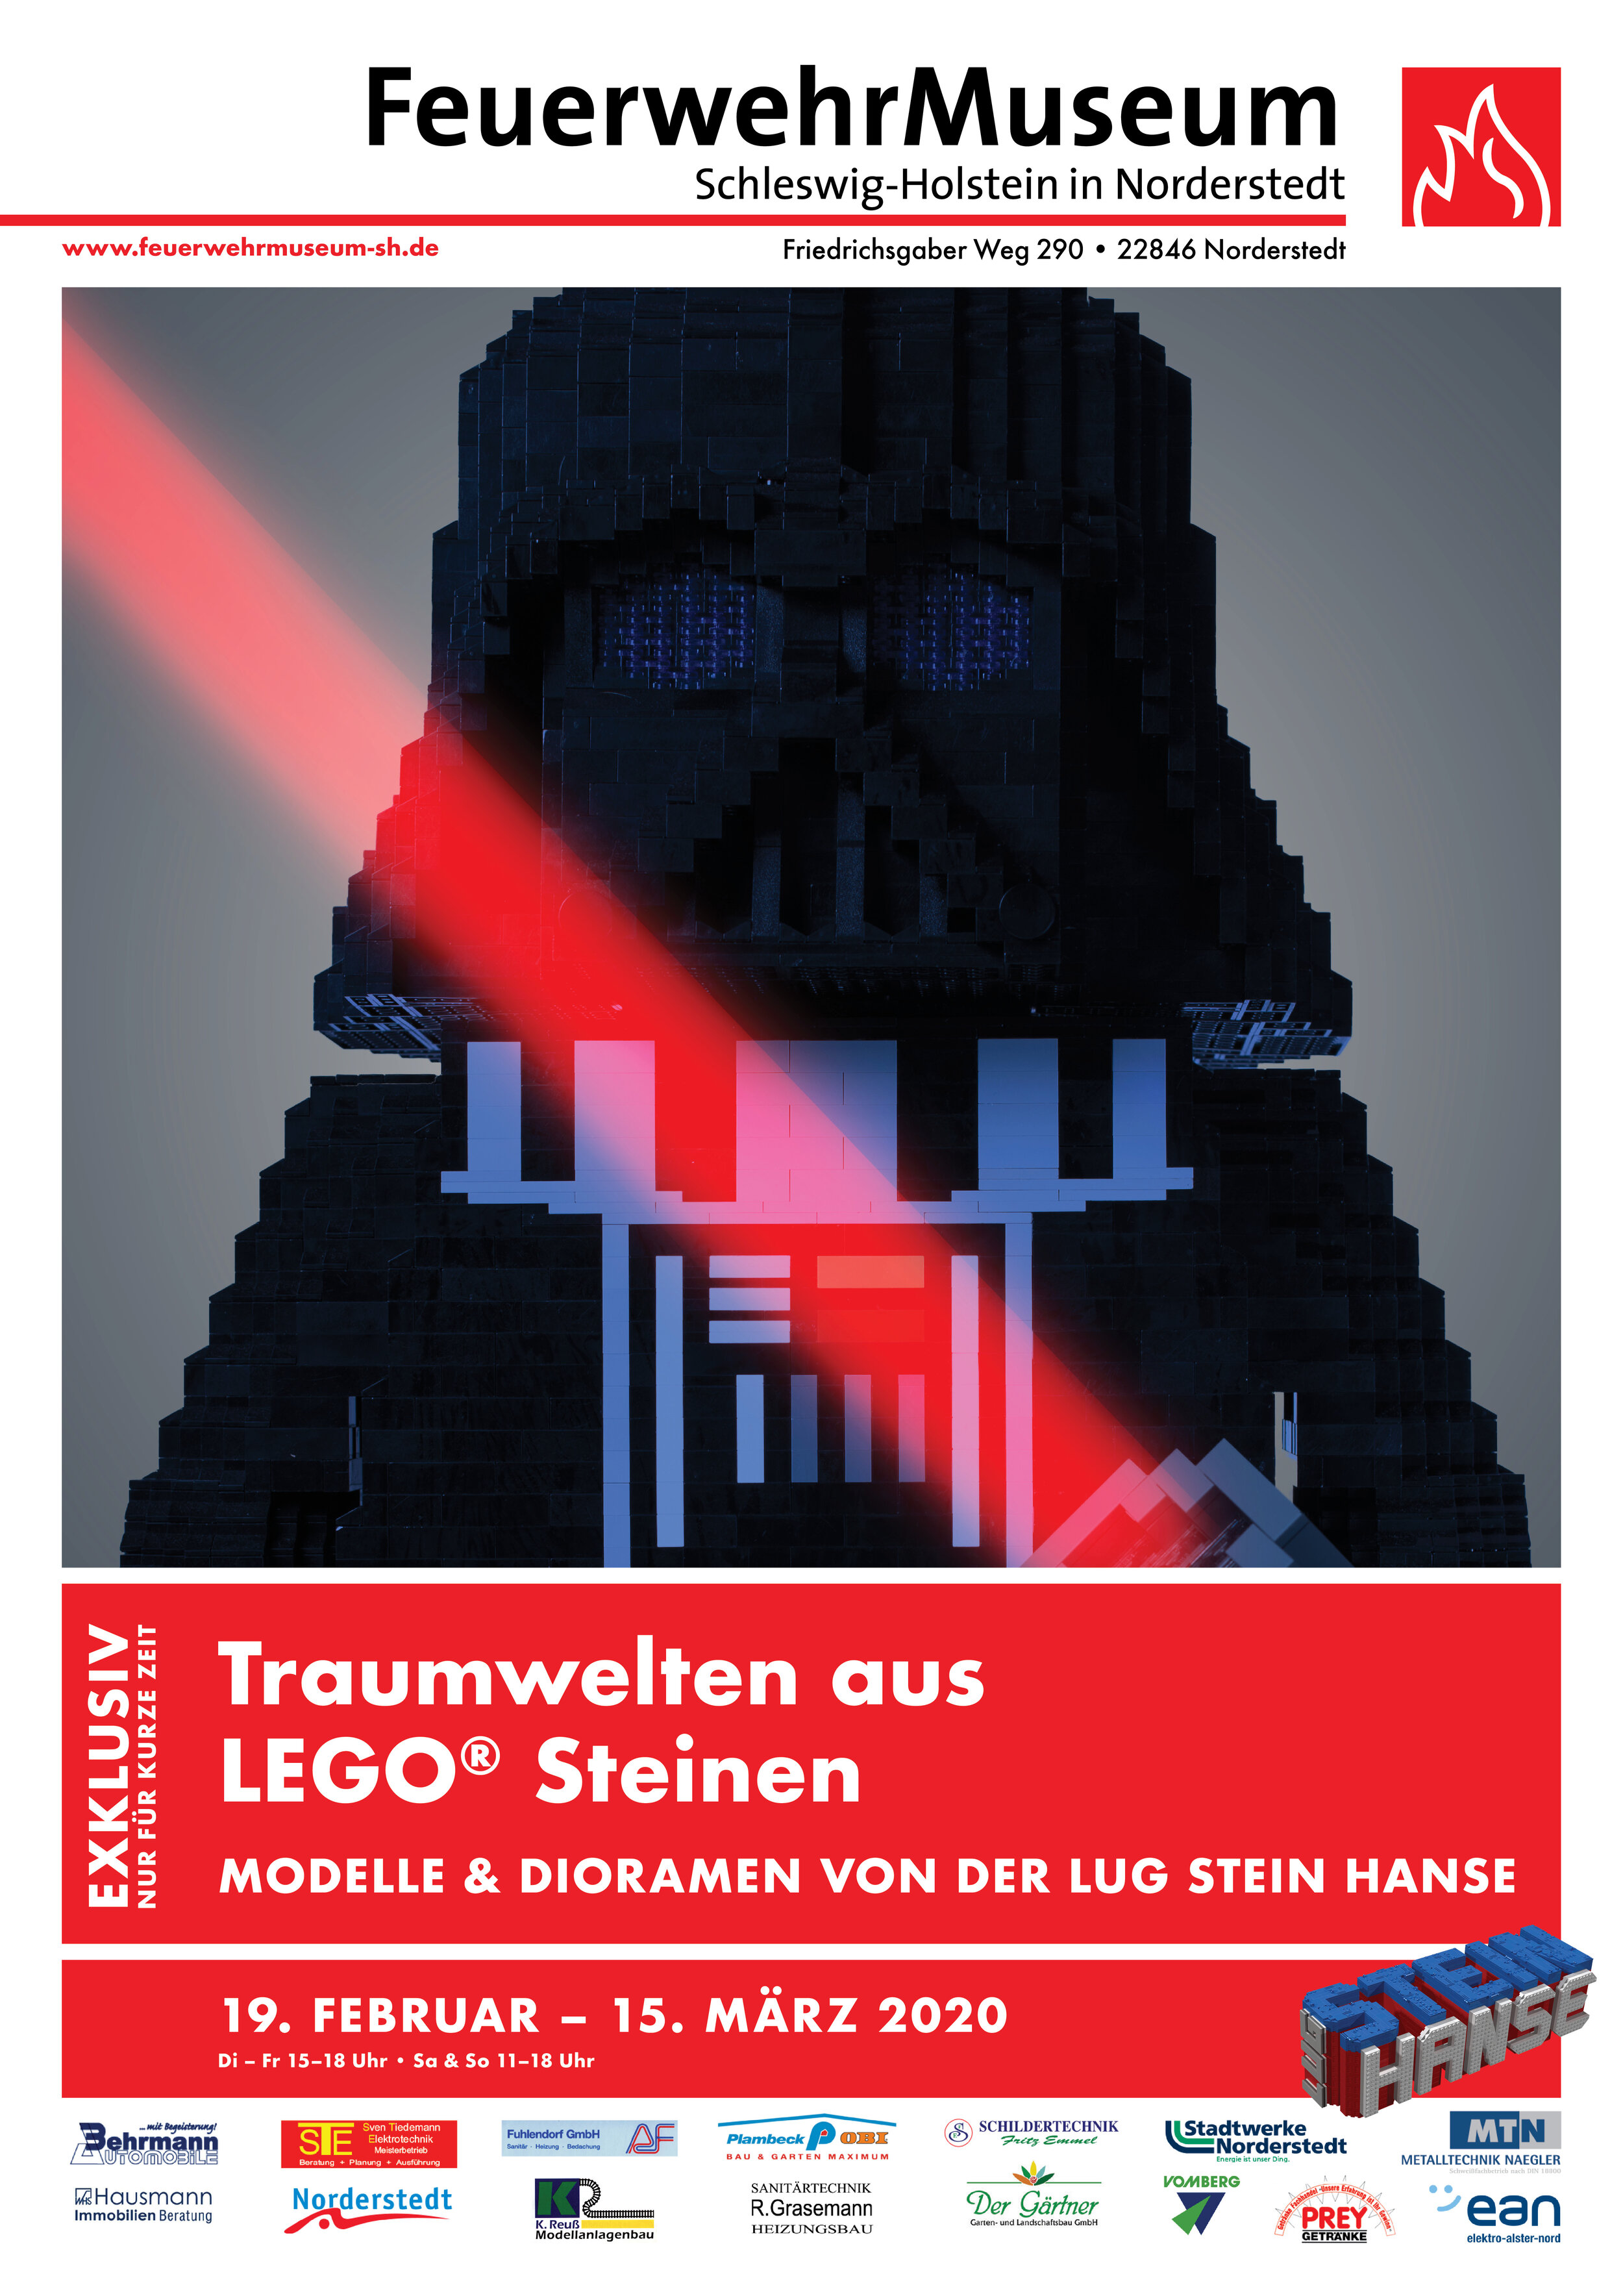 Poster Darth Vader